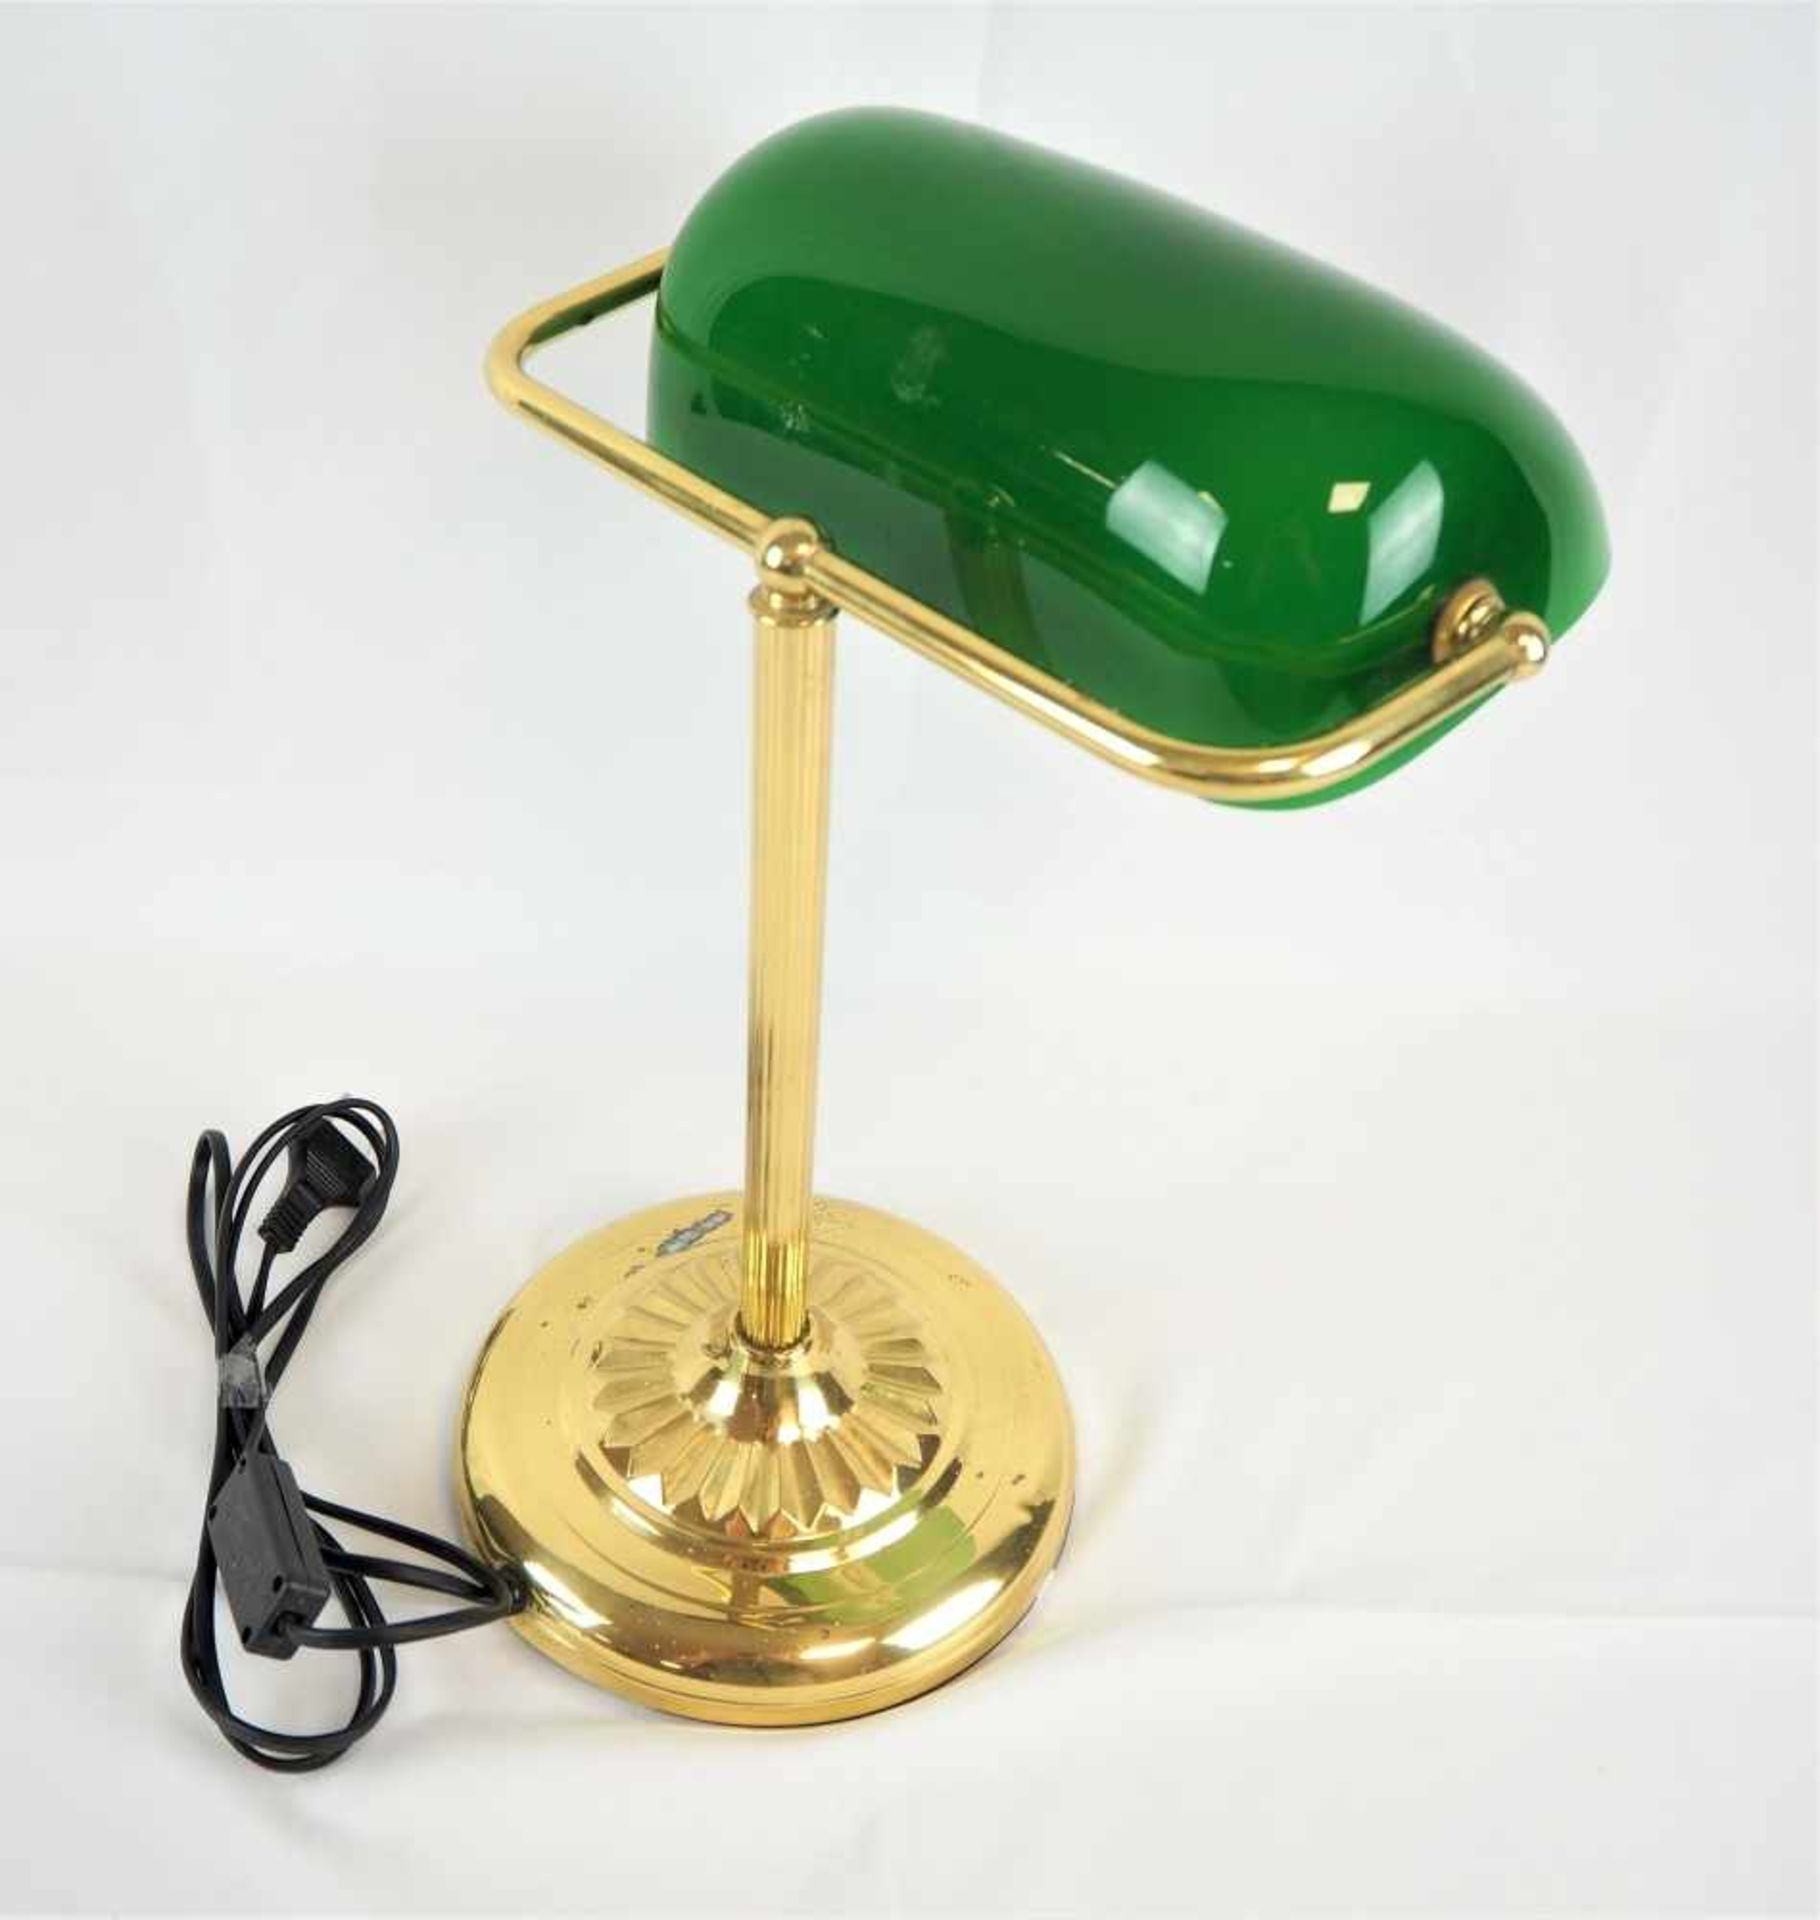 Tischlampe 60er JahreGestell aus Messing, Schirm aus grünem Glas, funktionstüchtig. H. 37cmTable